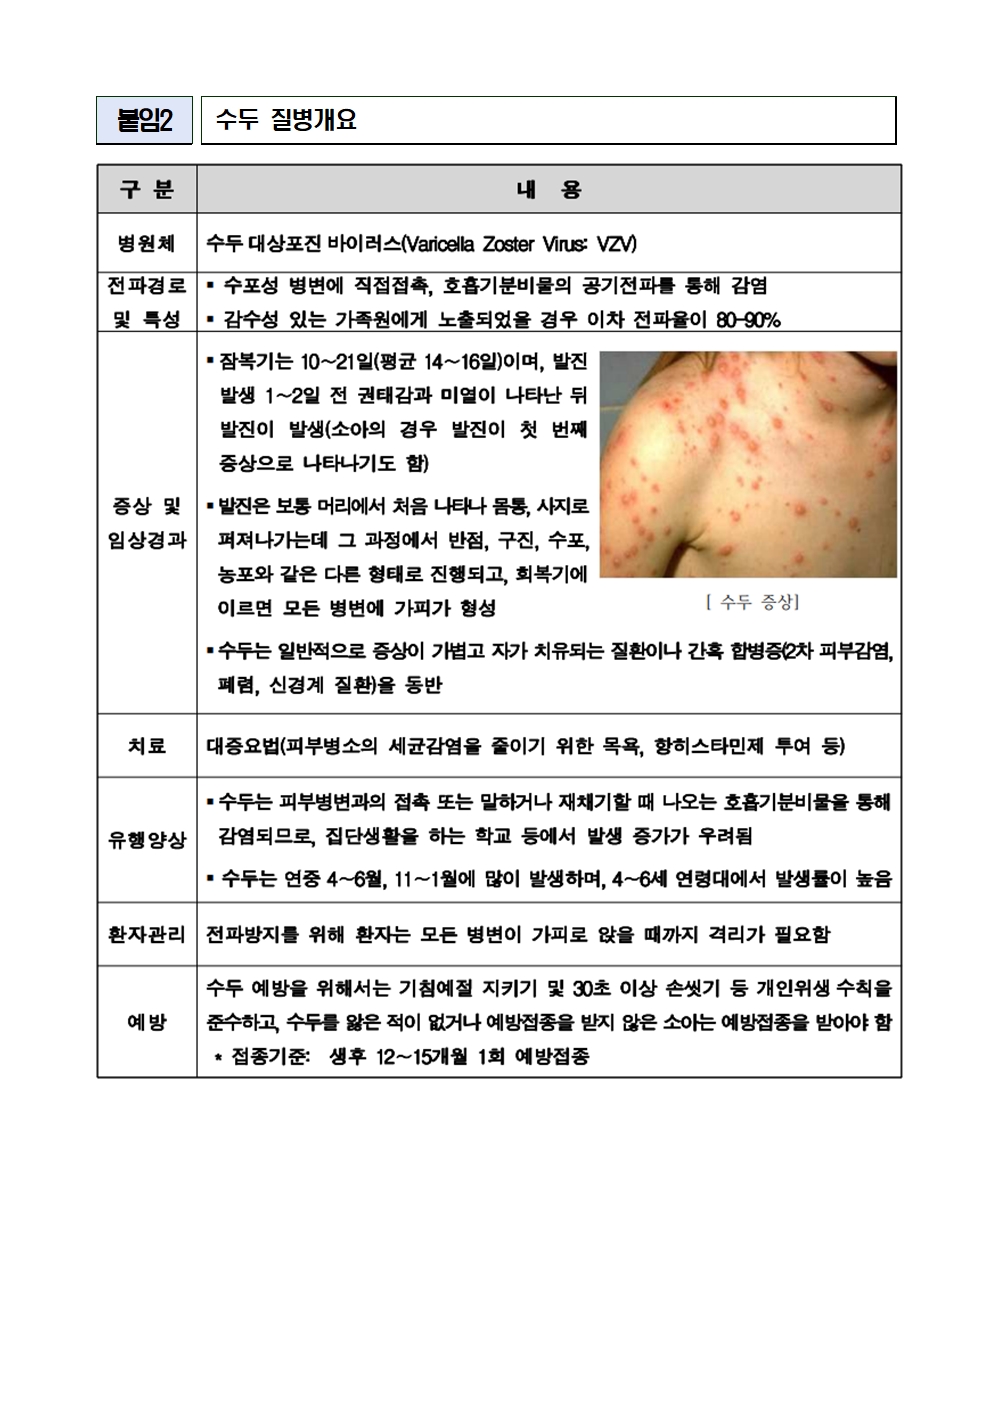 홍역, 수두 등 감염병 예방관리 안내004